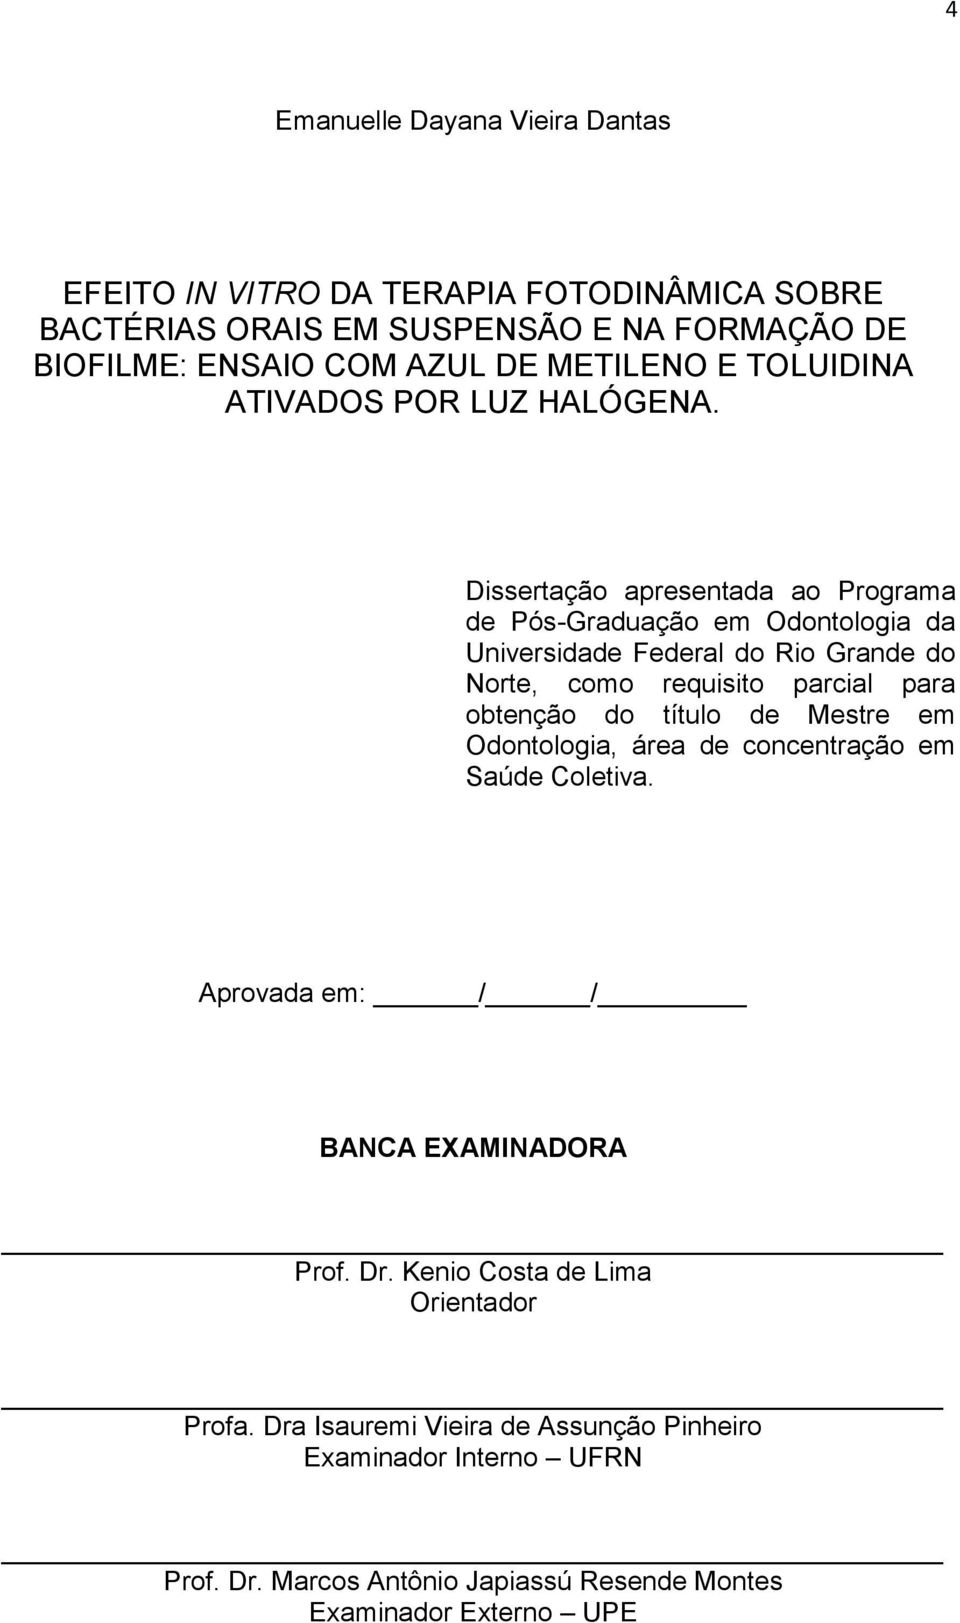 Dissertação apresentada ao Programa de Pós-Graduação em Odontologia da Universidade Federal do Rio Grande do Norte, como requisito parcial para obtenção do título